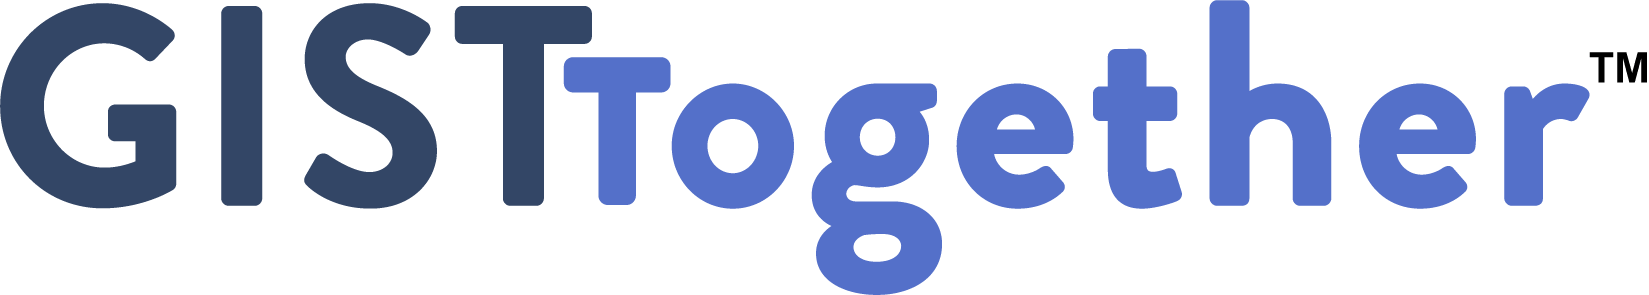 GIST Together logo